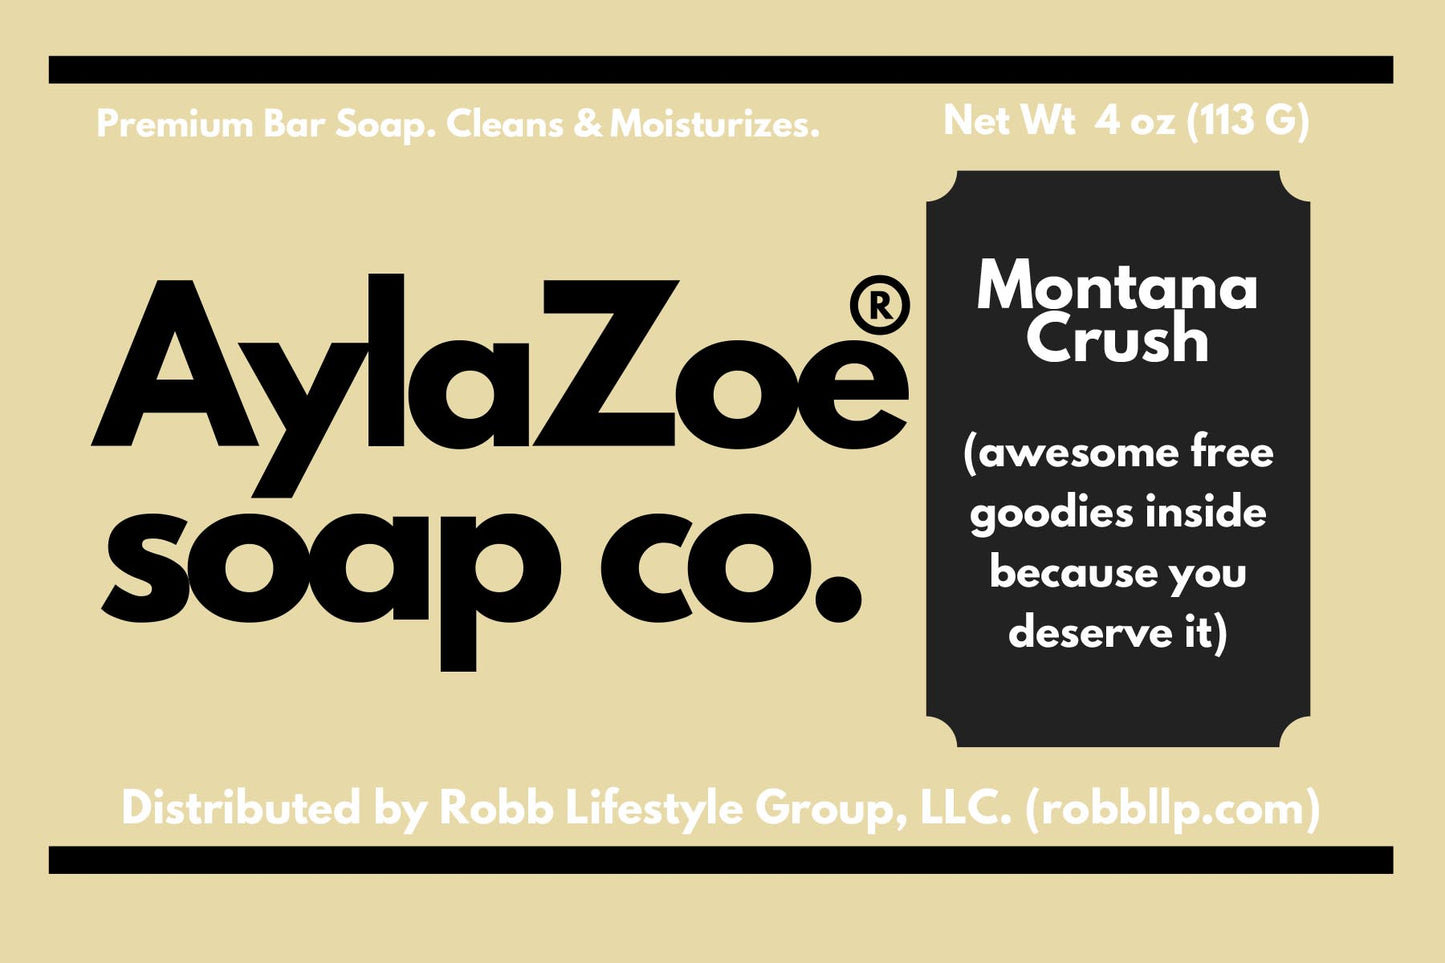 AylaZoe Soap Co. - Montana Crush 4oz Bar Soap